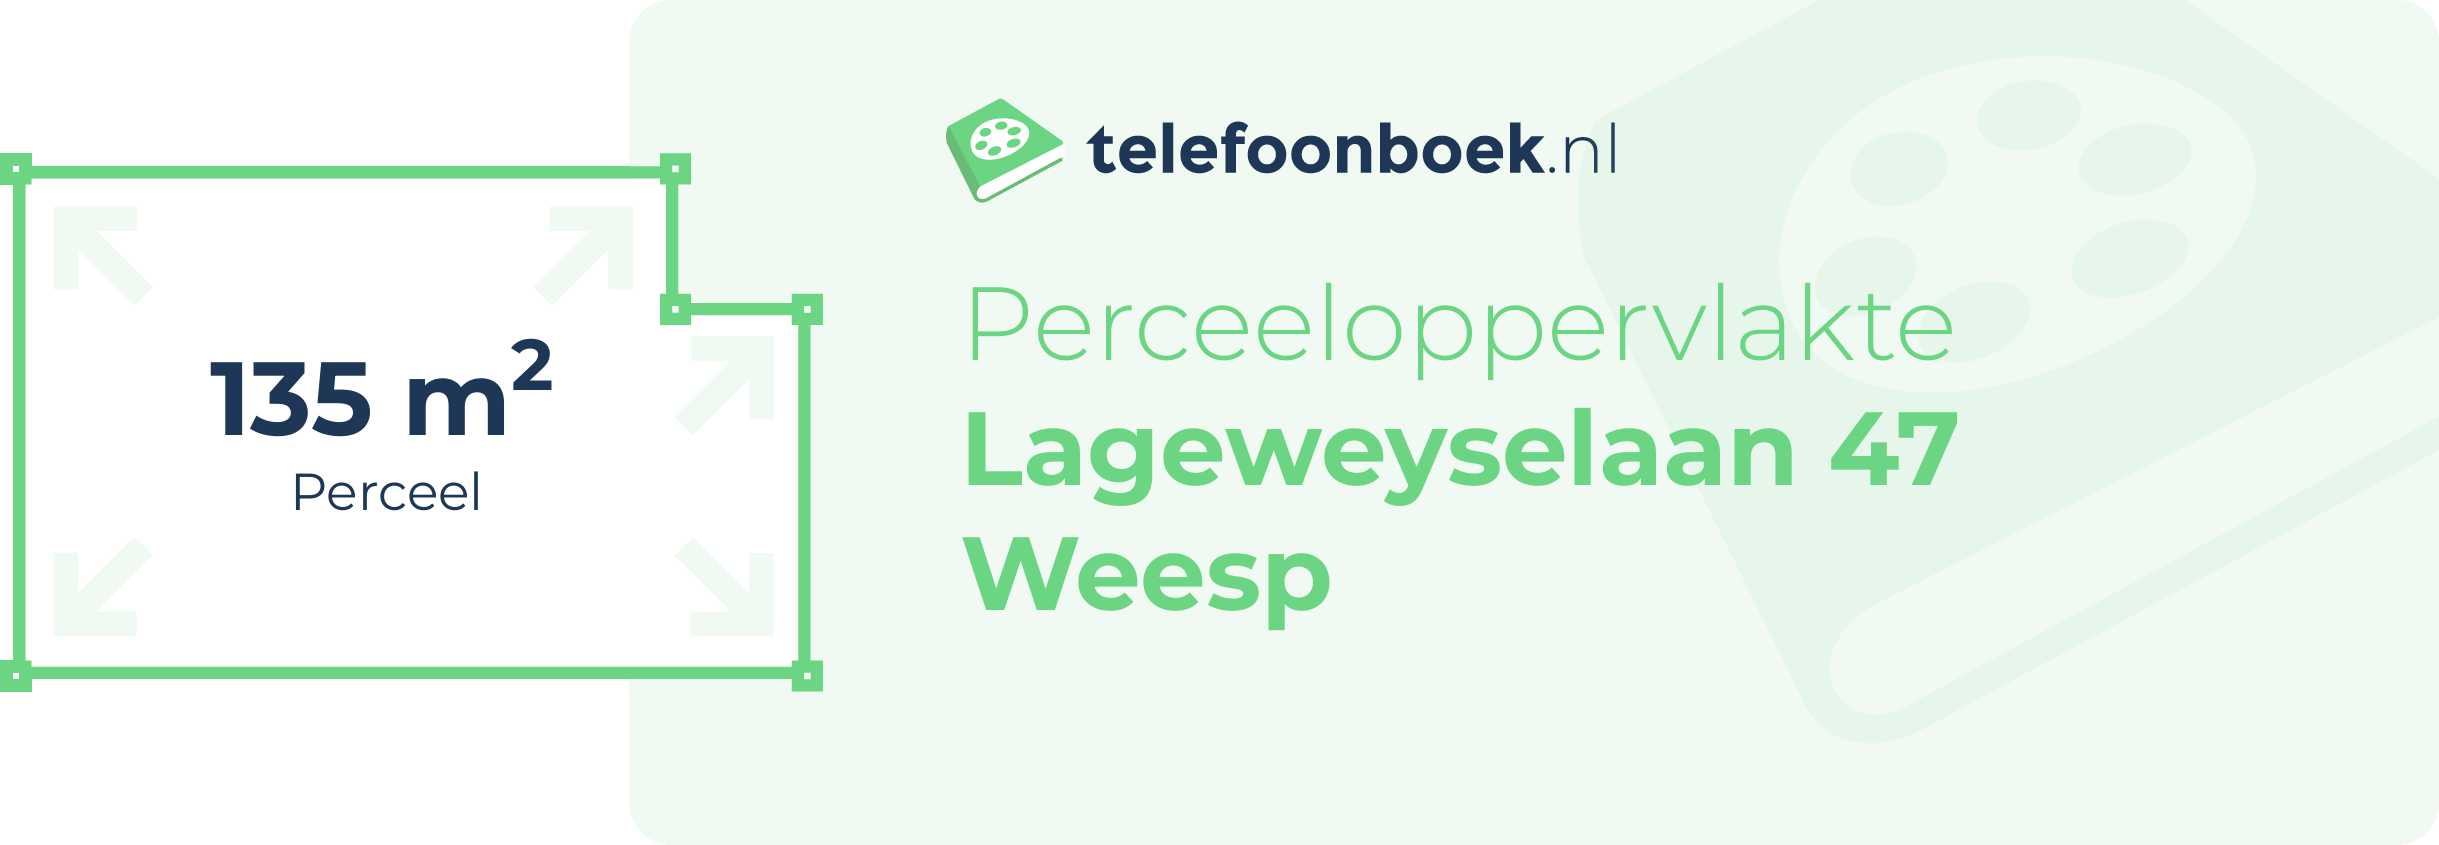 Perceeloppervlakte Lageweyselaan 47 Weesp